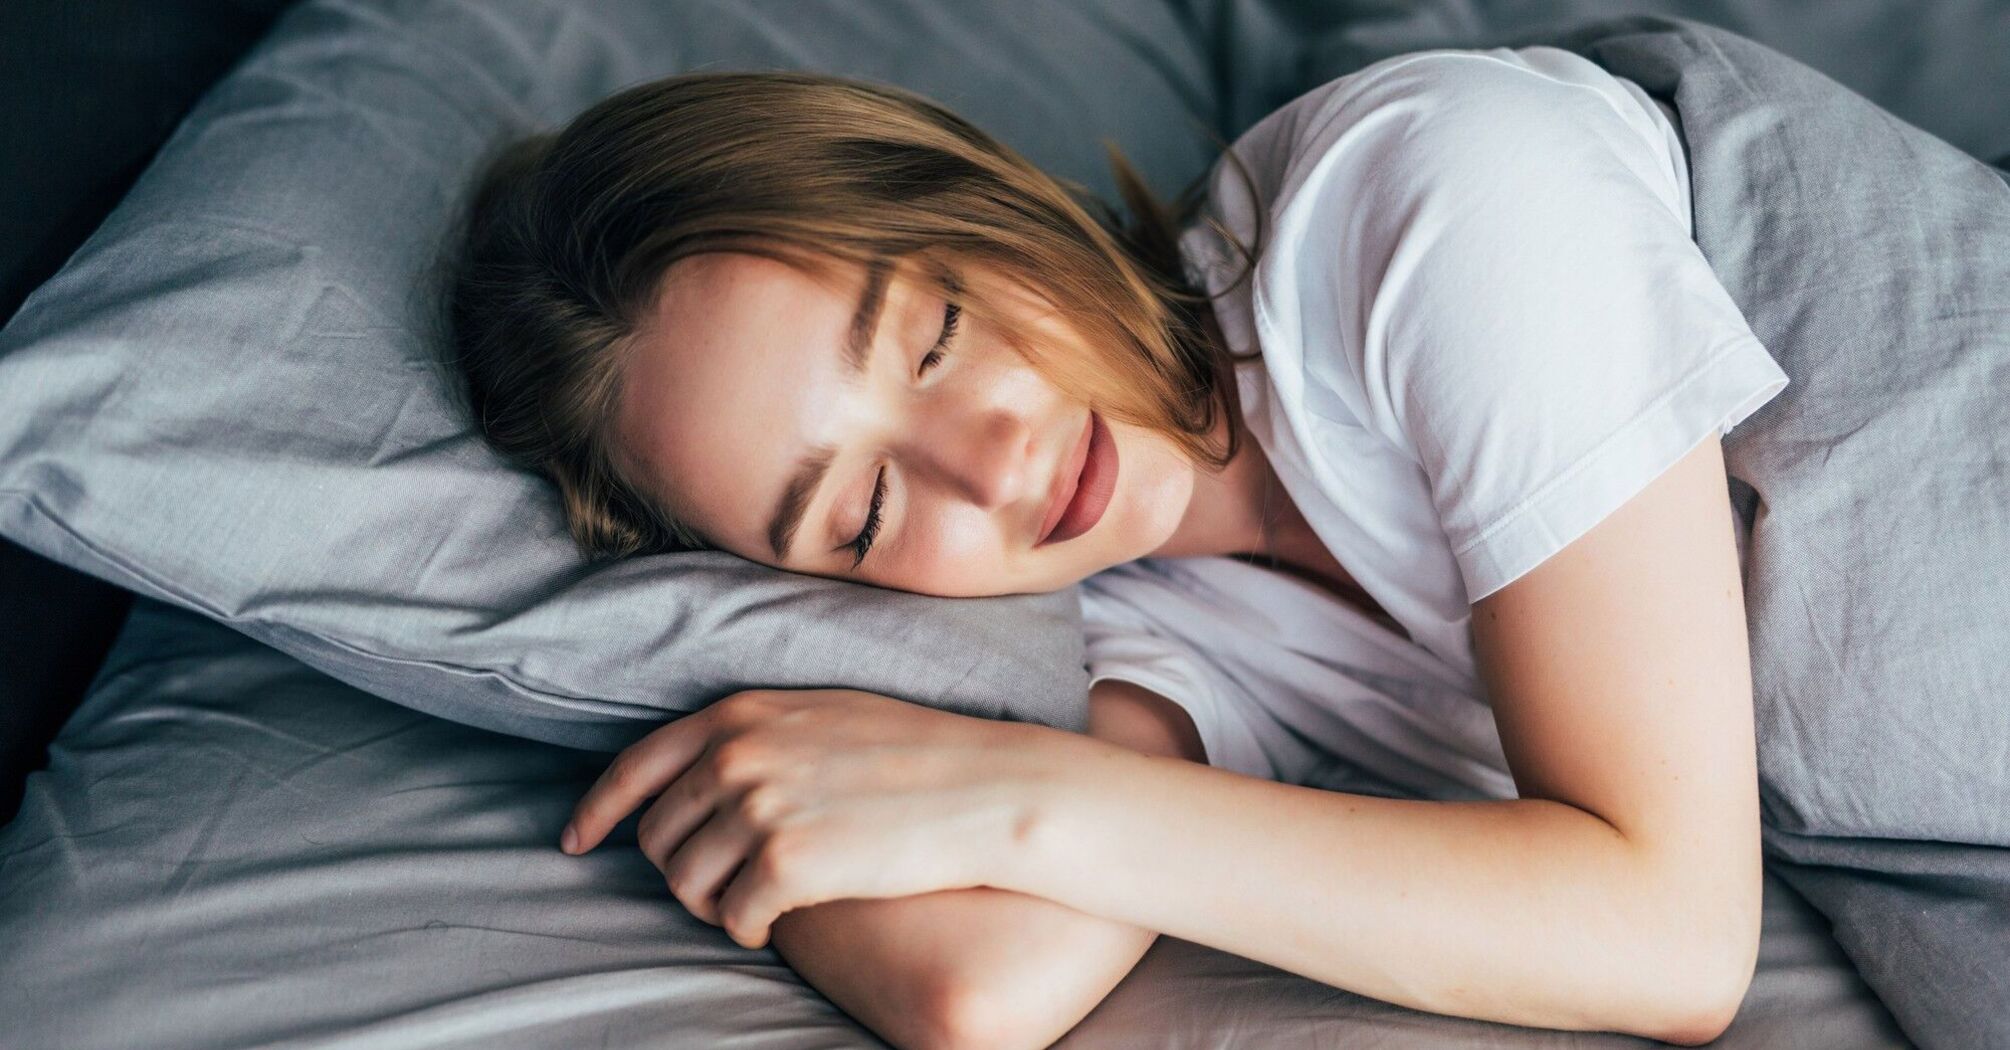 Эксперты рассказали, как заснуть через 2 минуты, если вы проснулись среди ночи